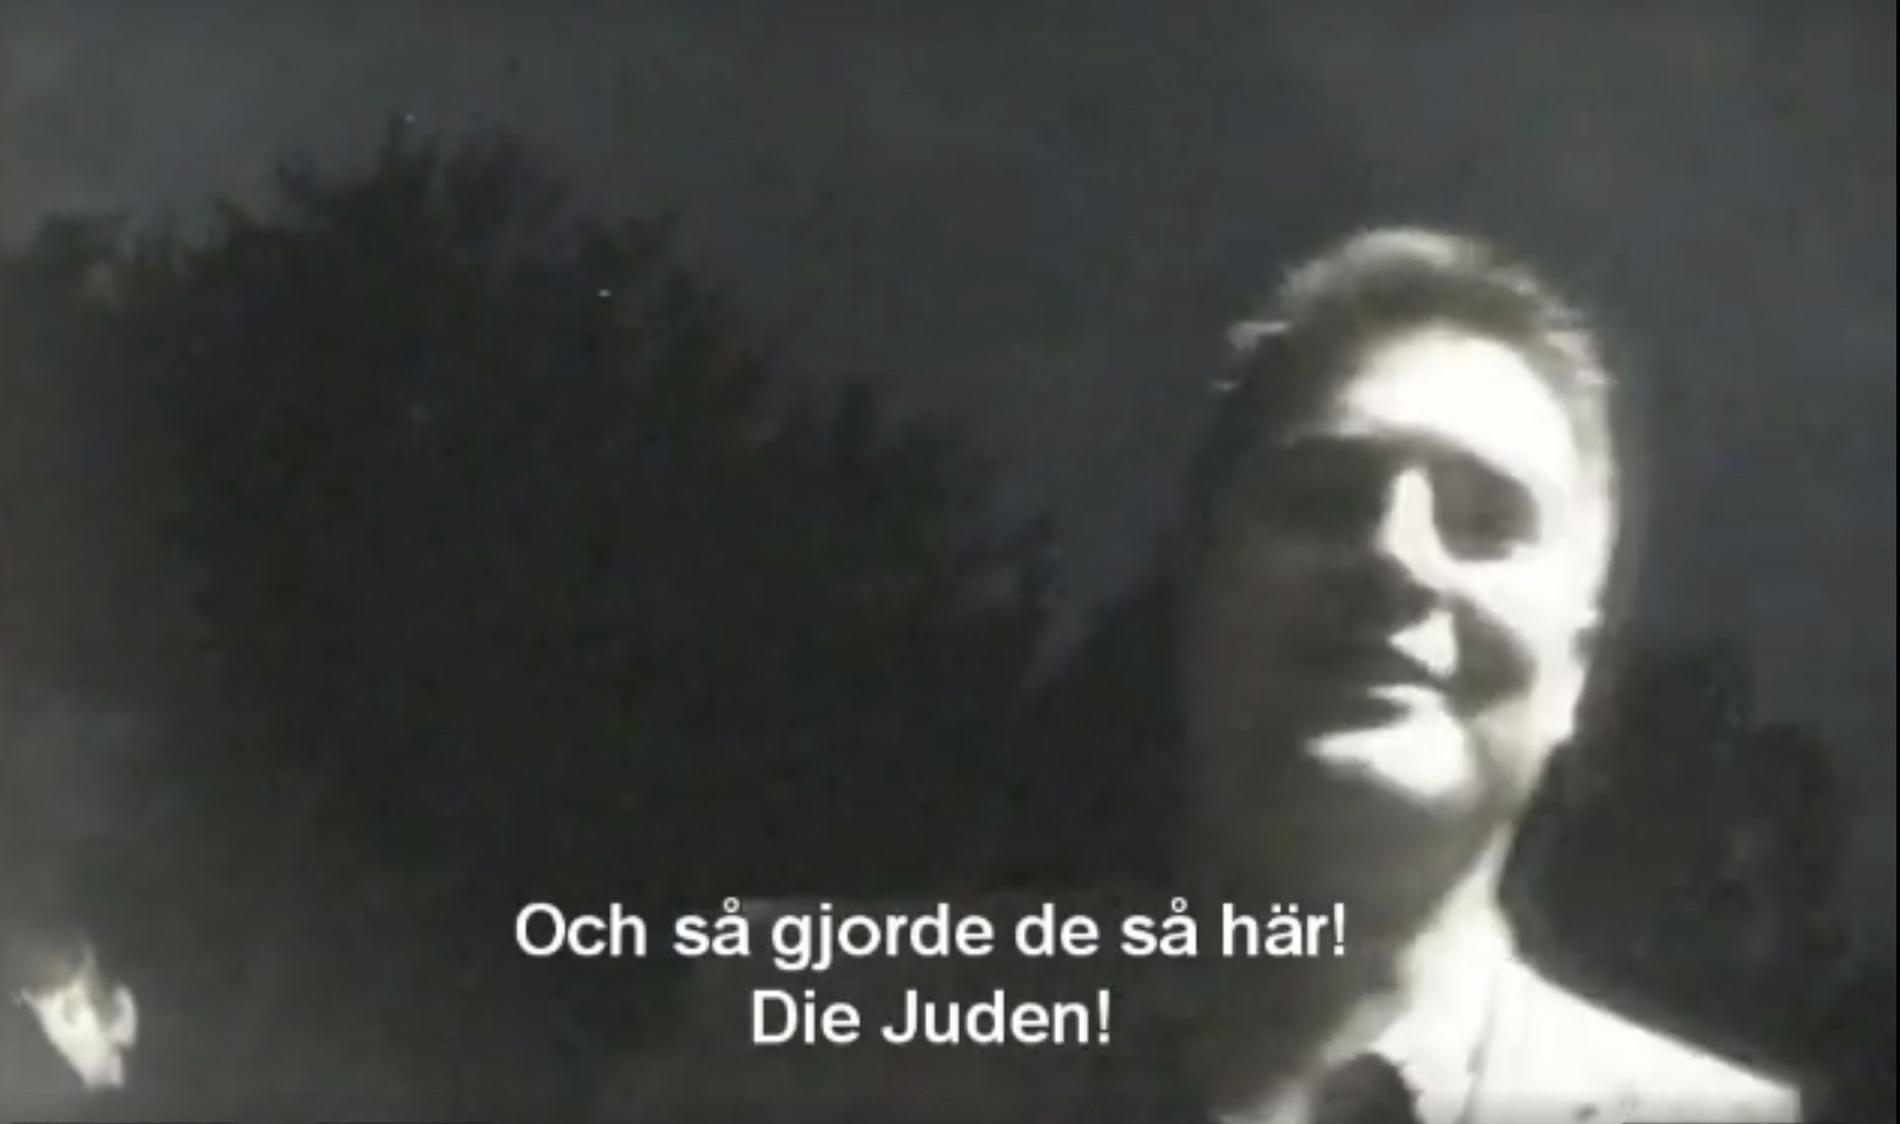 Oscar Sjöstedt i filmen som fått spridning genom Inte rasist, men:s publicering